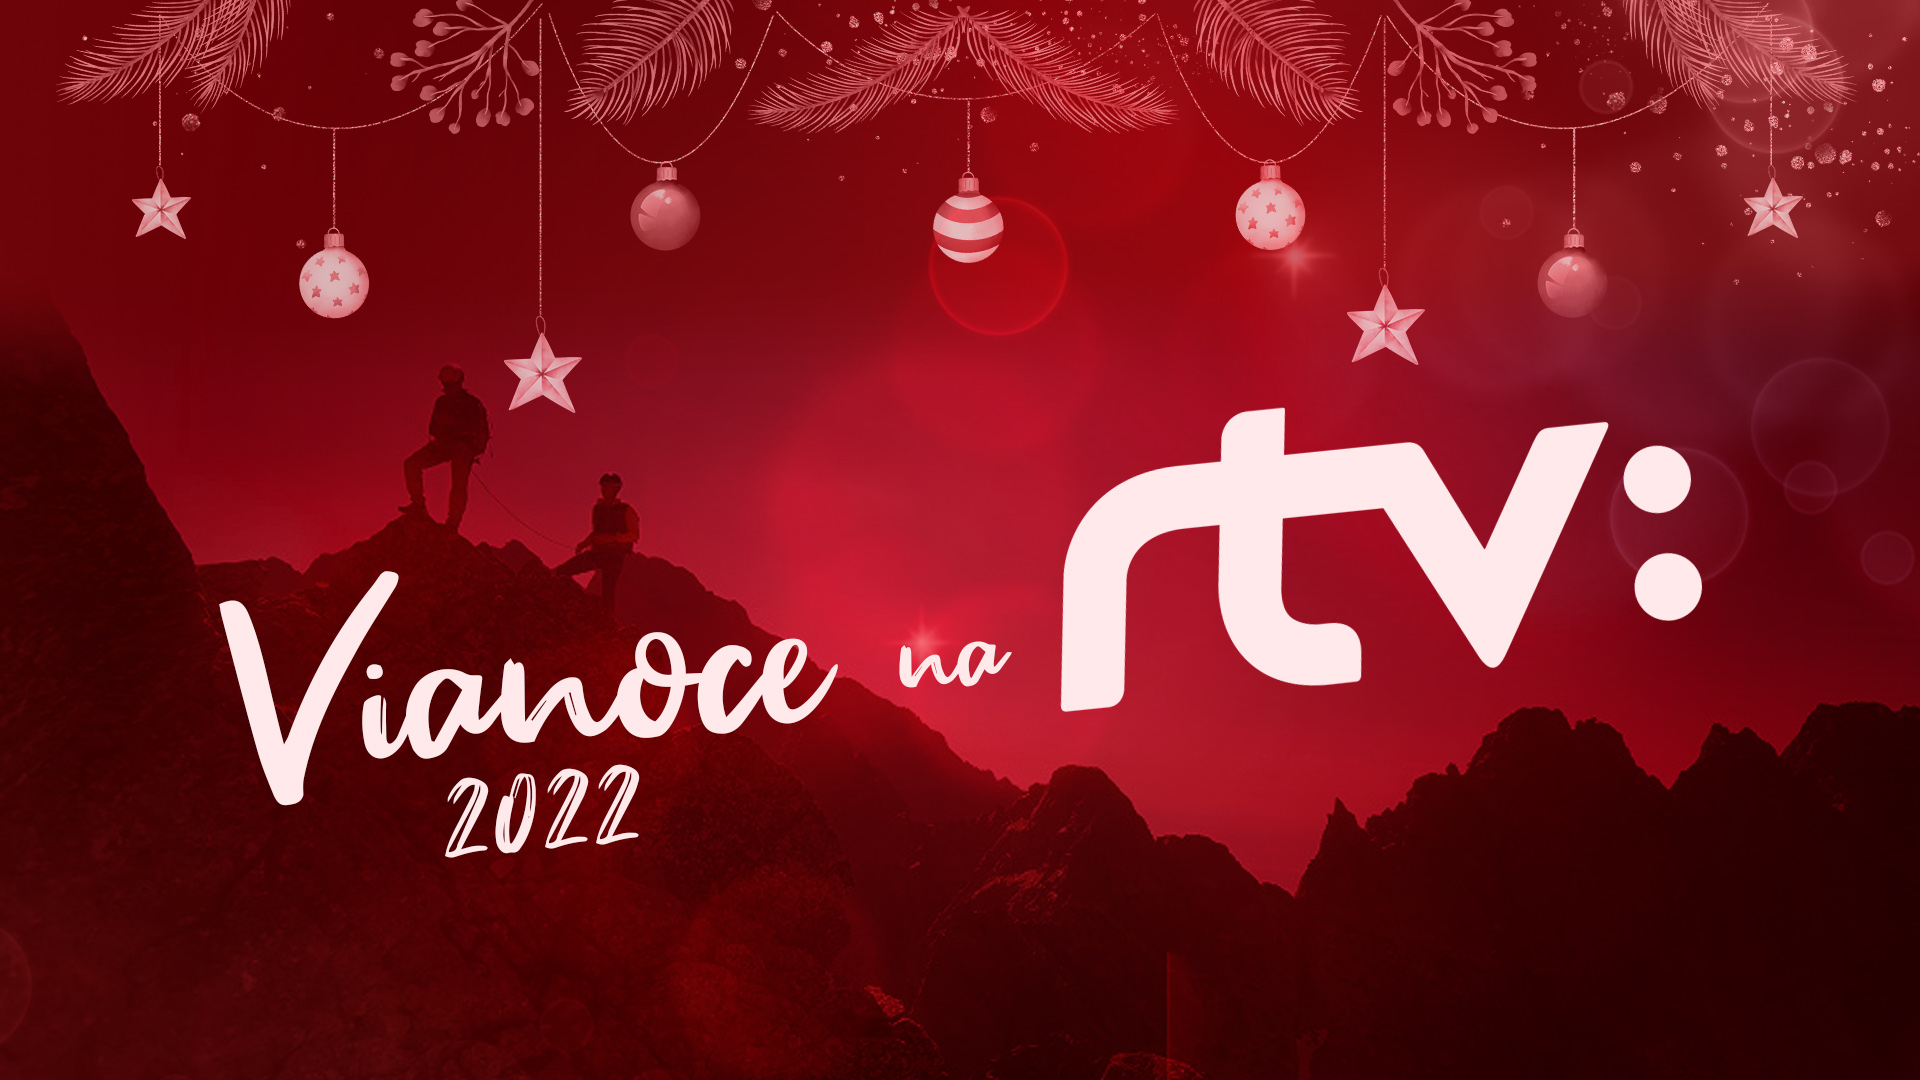 Filmy s horskou tematikou počas Vianoc 2022 na RTVS - OutdoorFilmy.sk